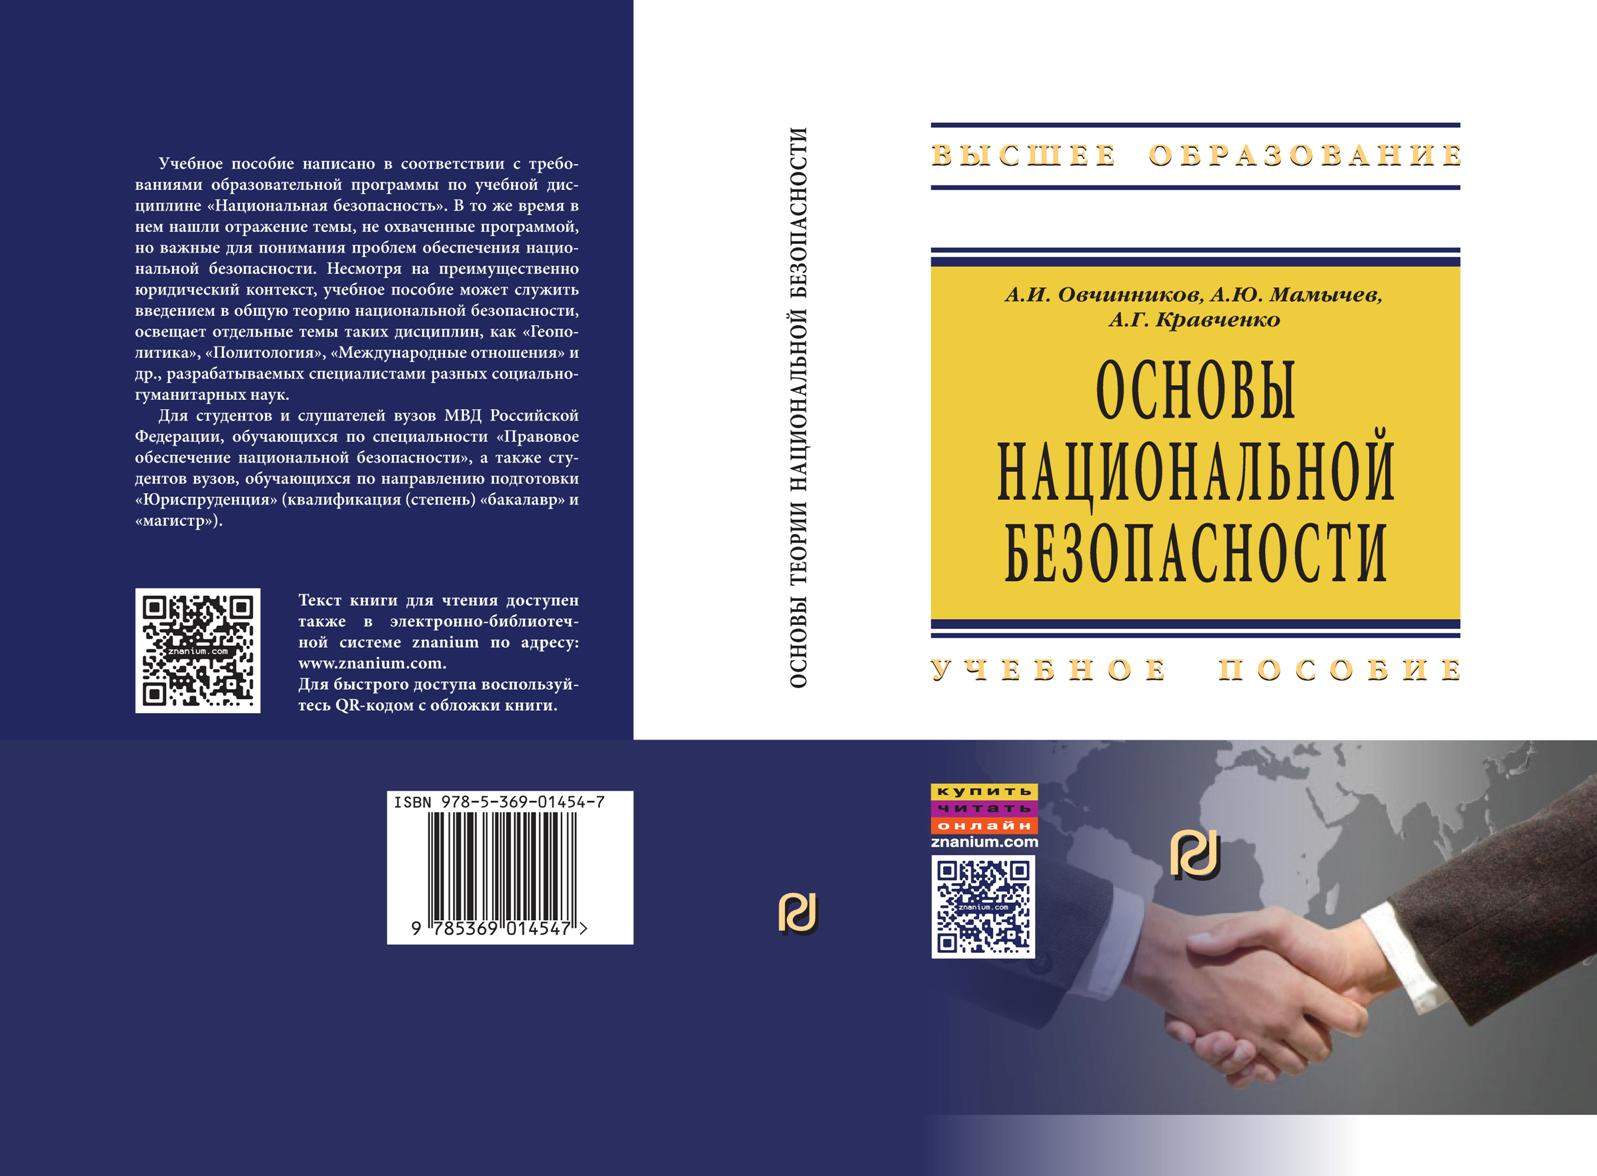 В центральном и солидном Московском издательстве (ИНФРА-М, г. Москва) вышло две книги преподавателей Института права